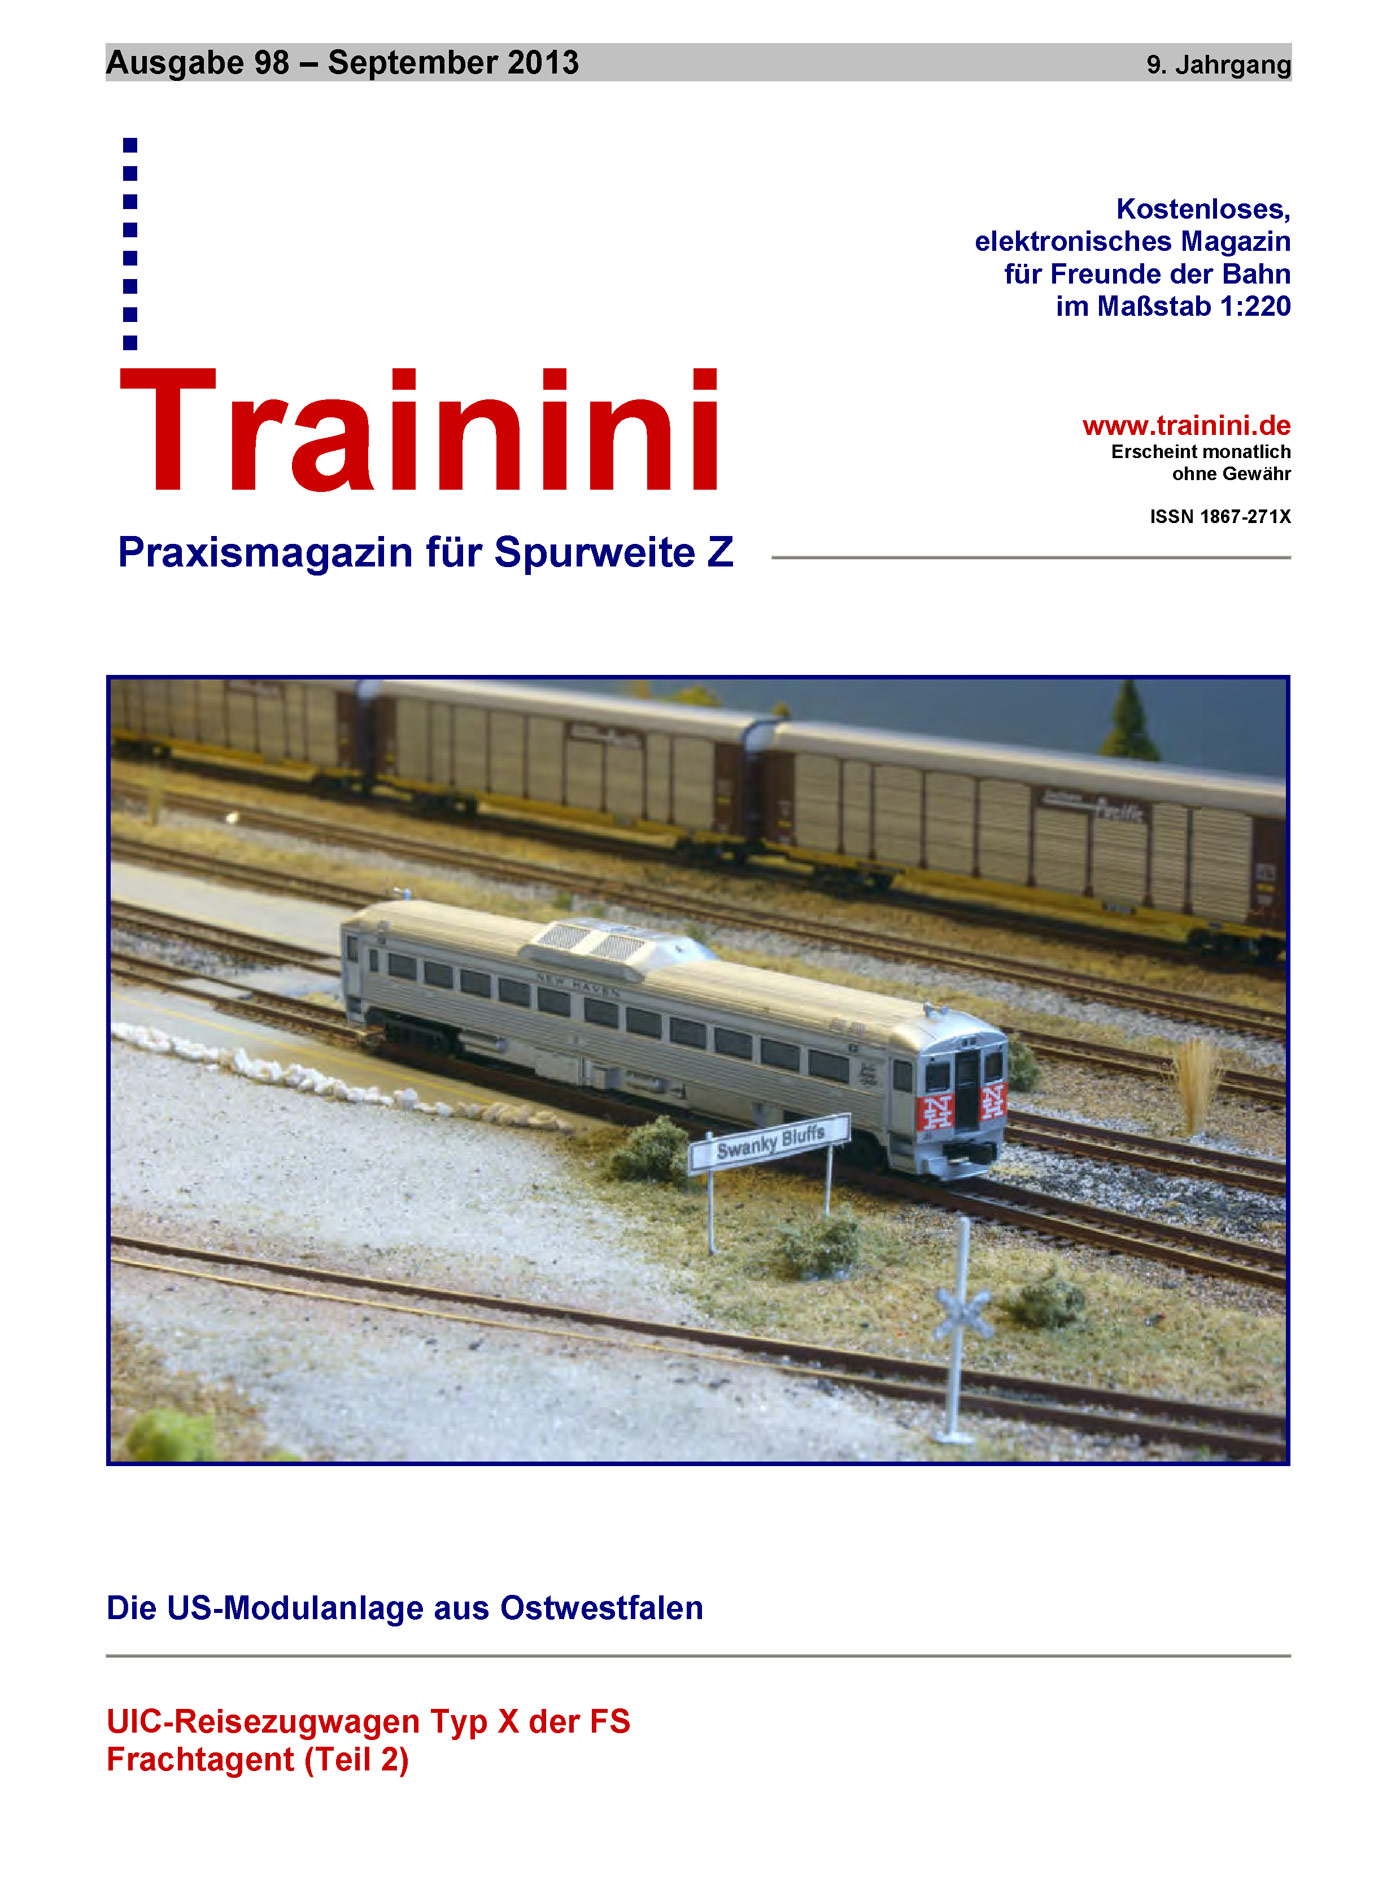 Trainini Ausgabe September 2013